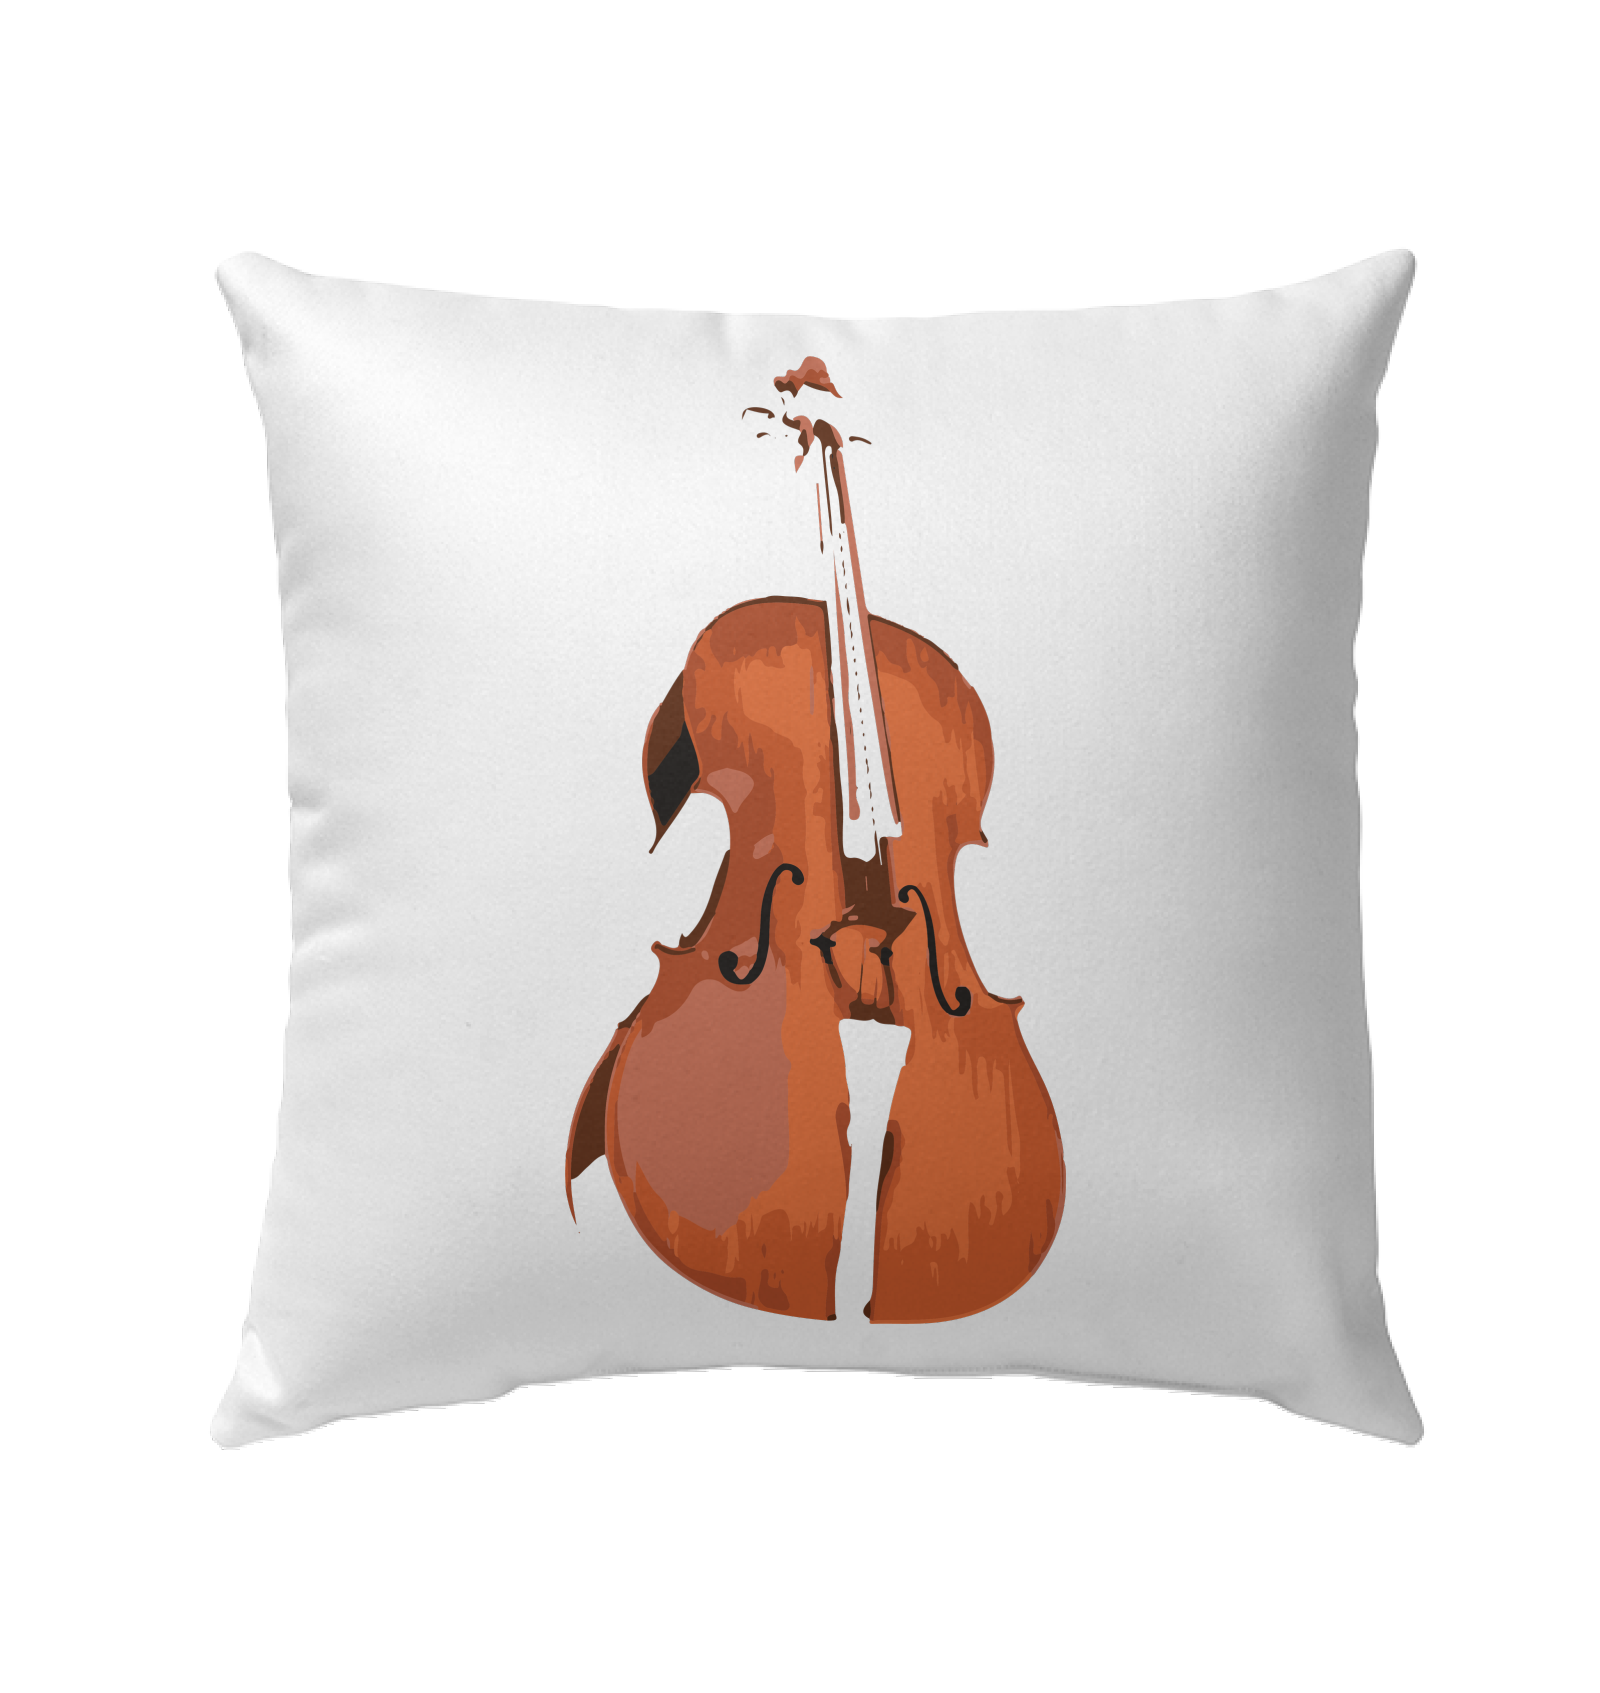 The Cello - Outdoor Pillow